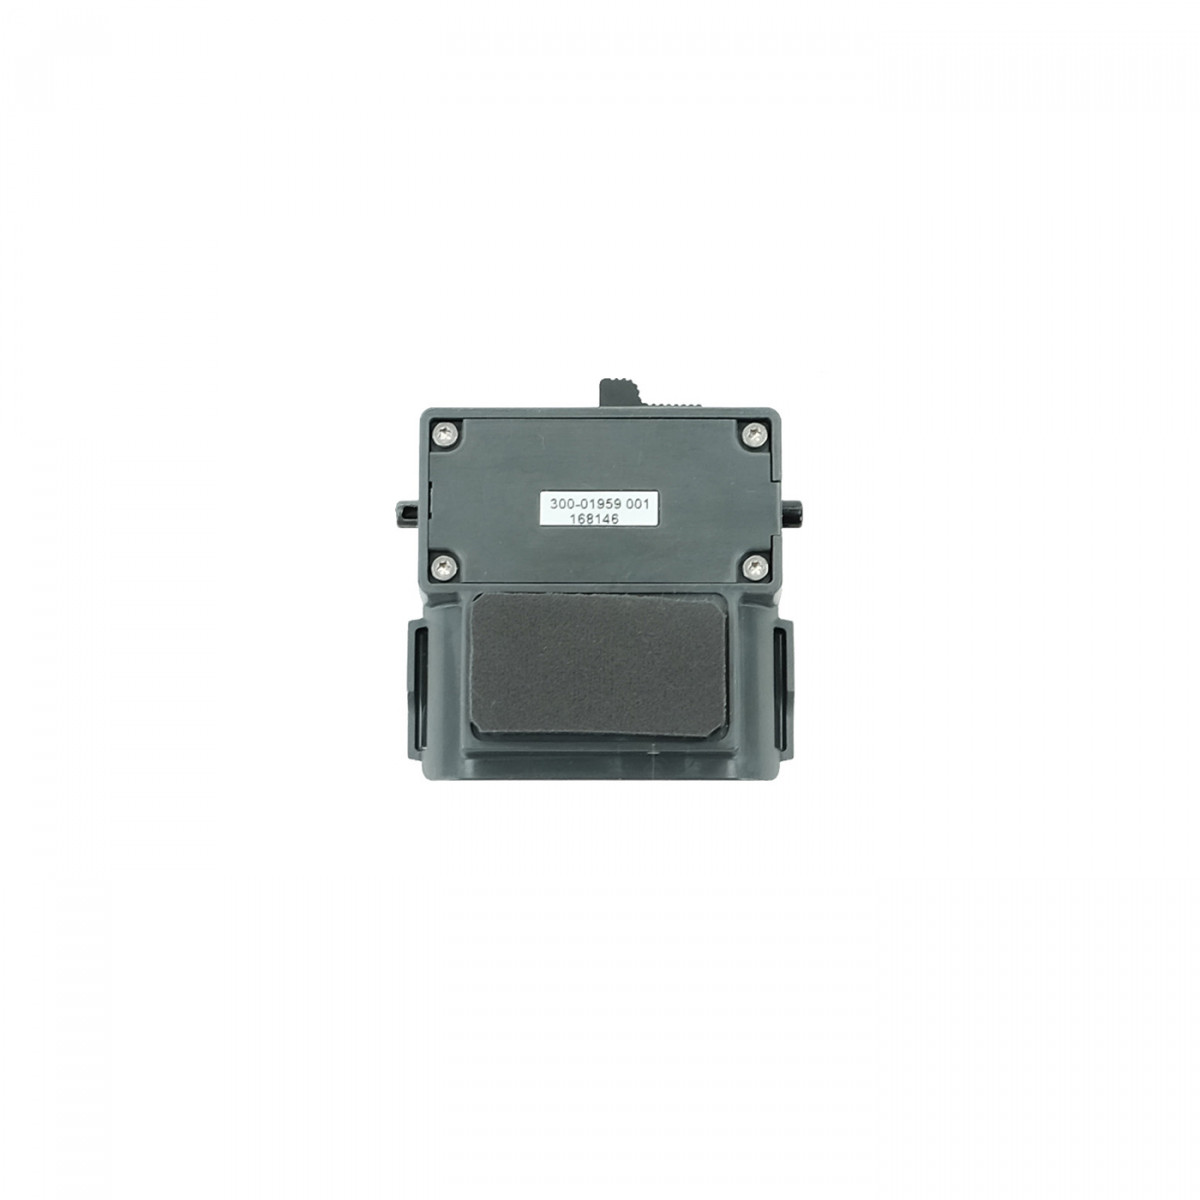 SEPURA charging slot insert for charging the SC21 in SC20/STP car charging cradle 300-01959